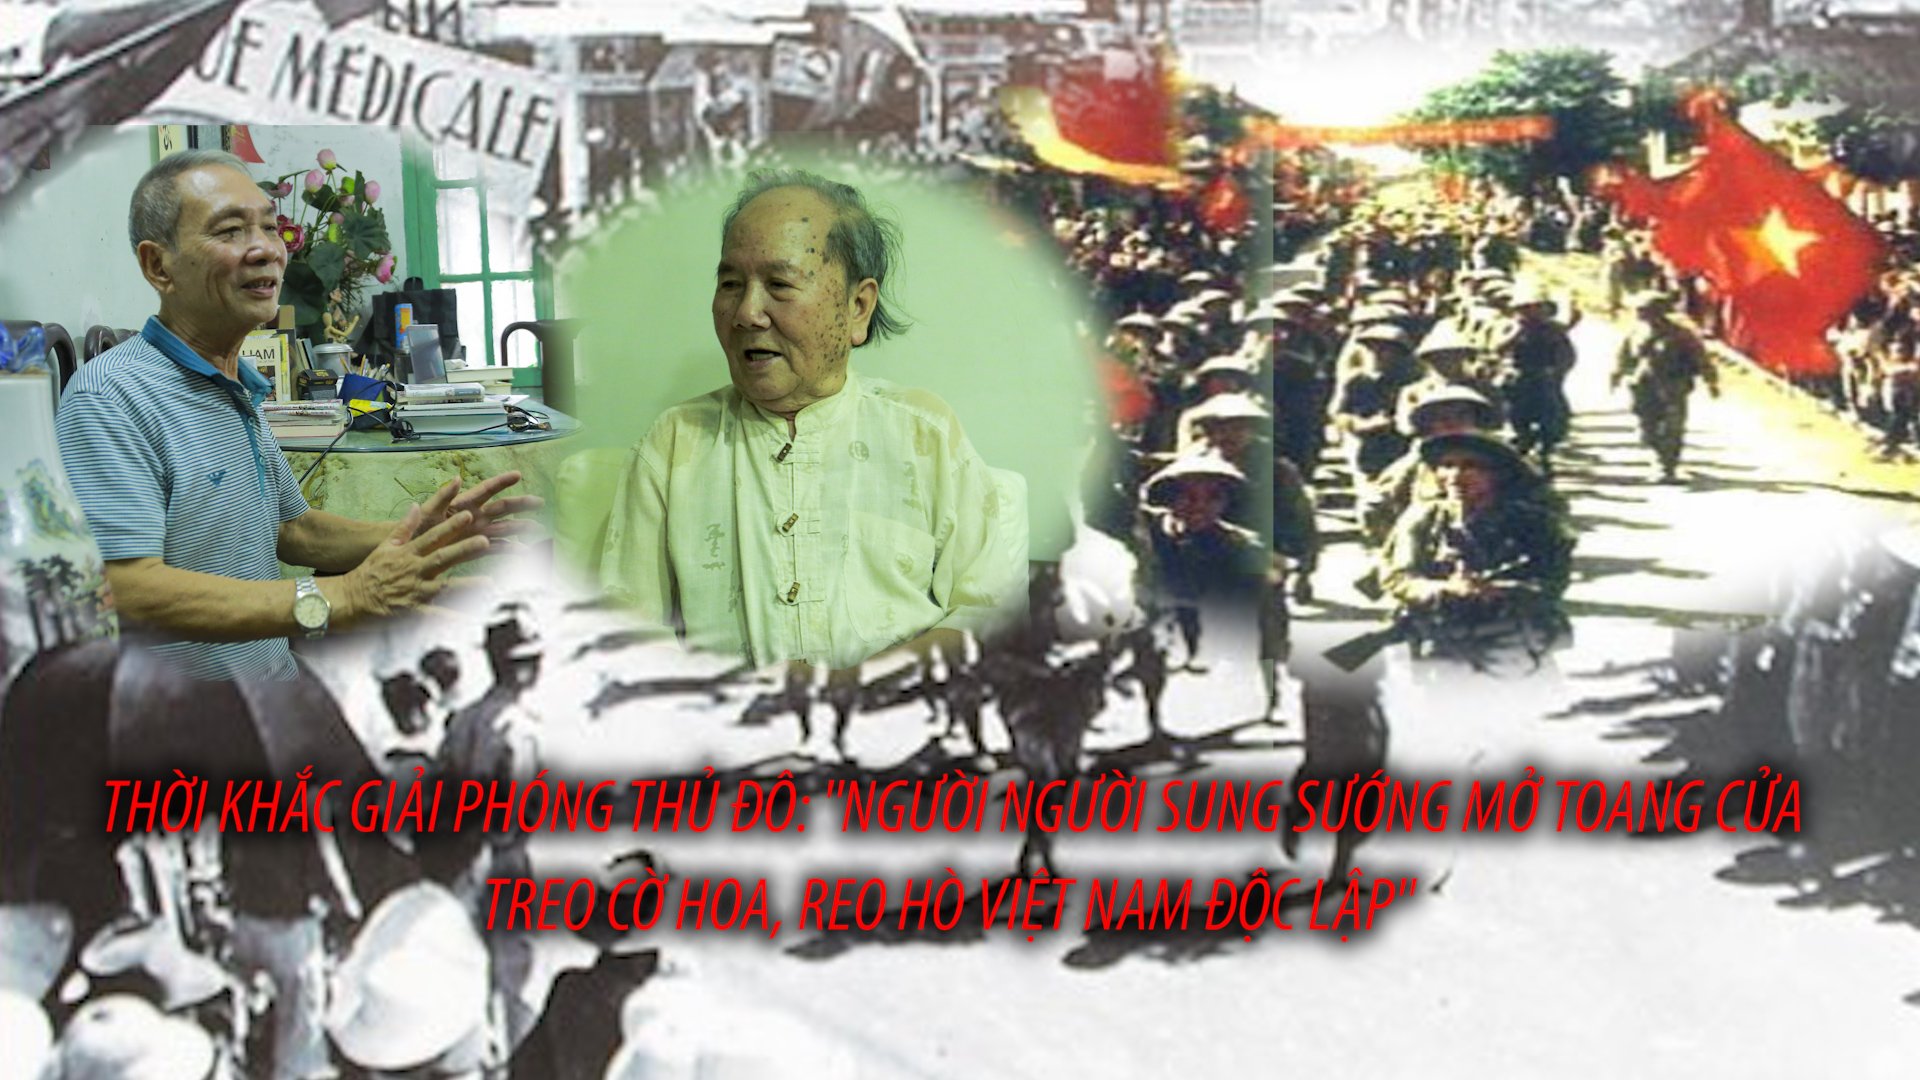 Thời khắc Giải phóng Thủ đô: “Người người sung sướng mở toang cửa treo cờ hoa, reo hò Việt Nam độc lập” - Ảnh 1.